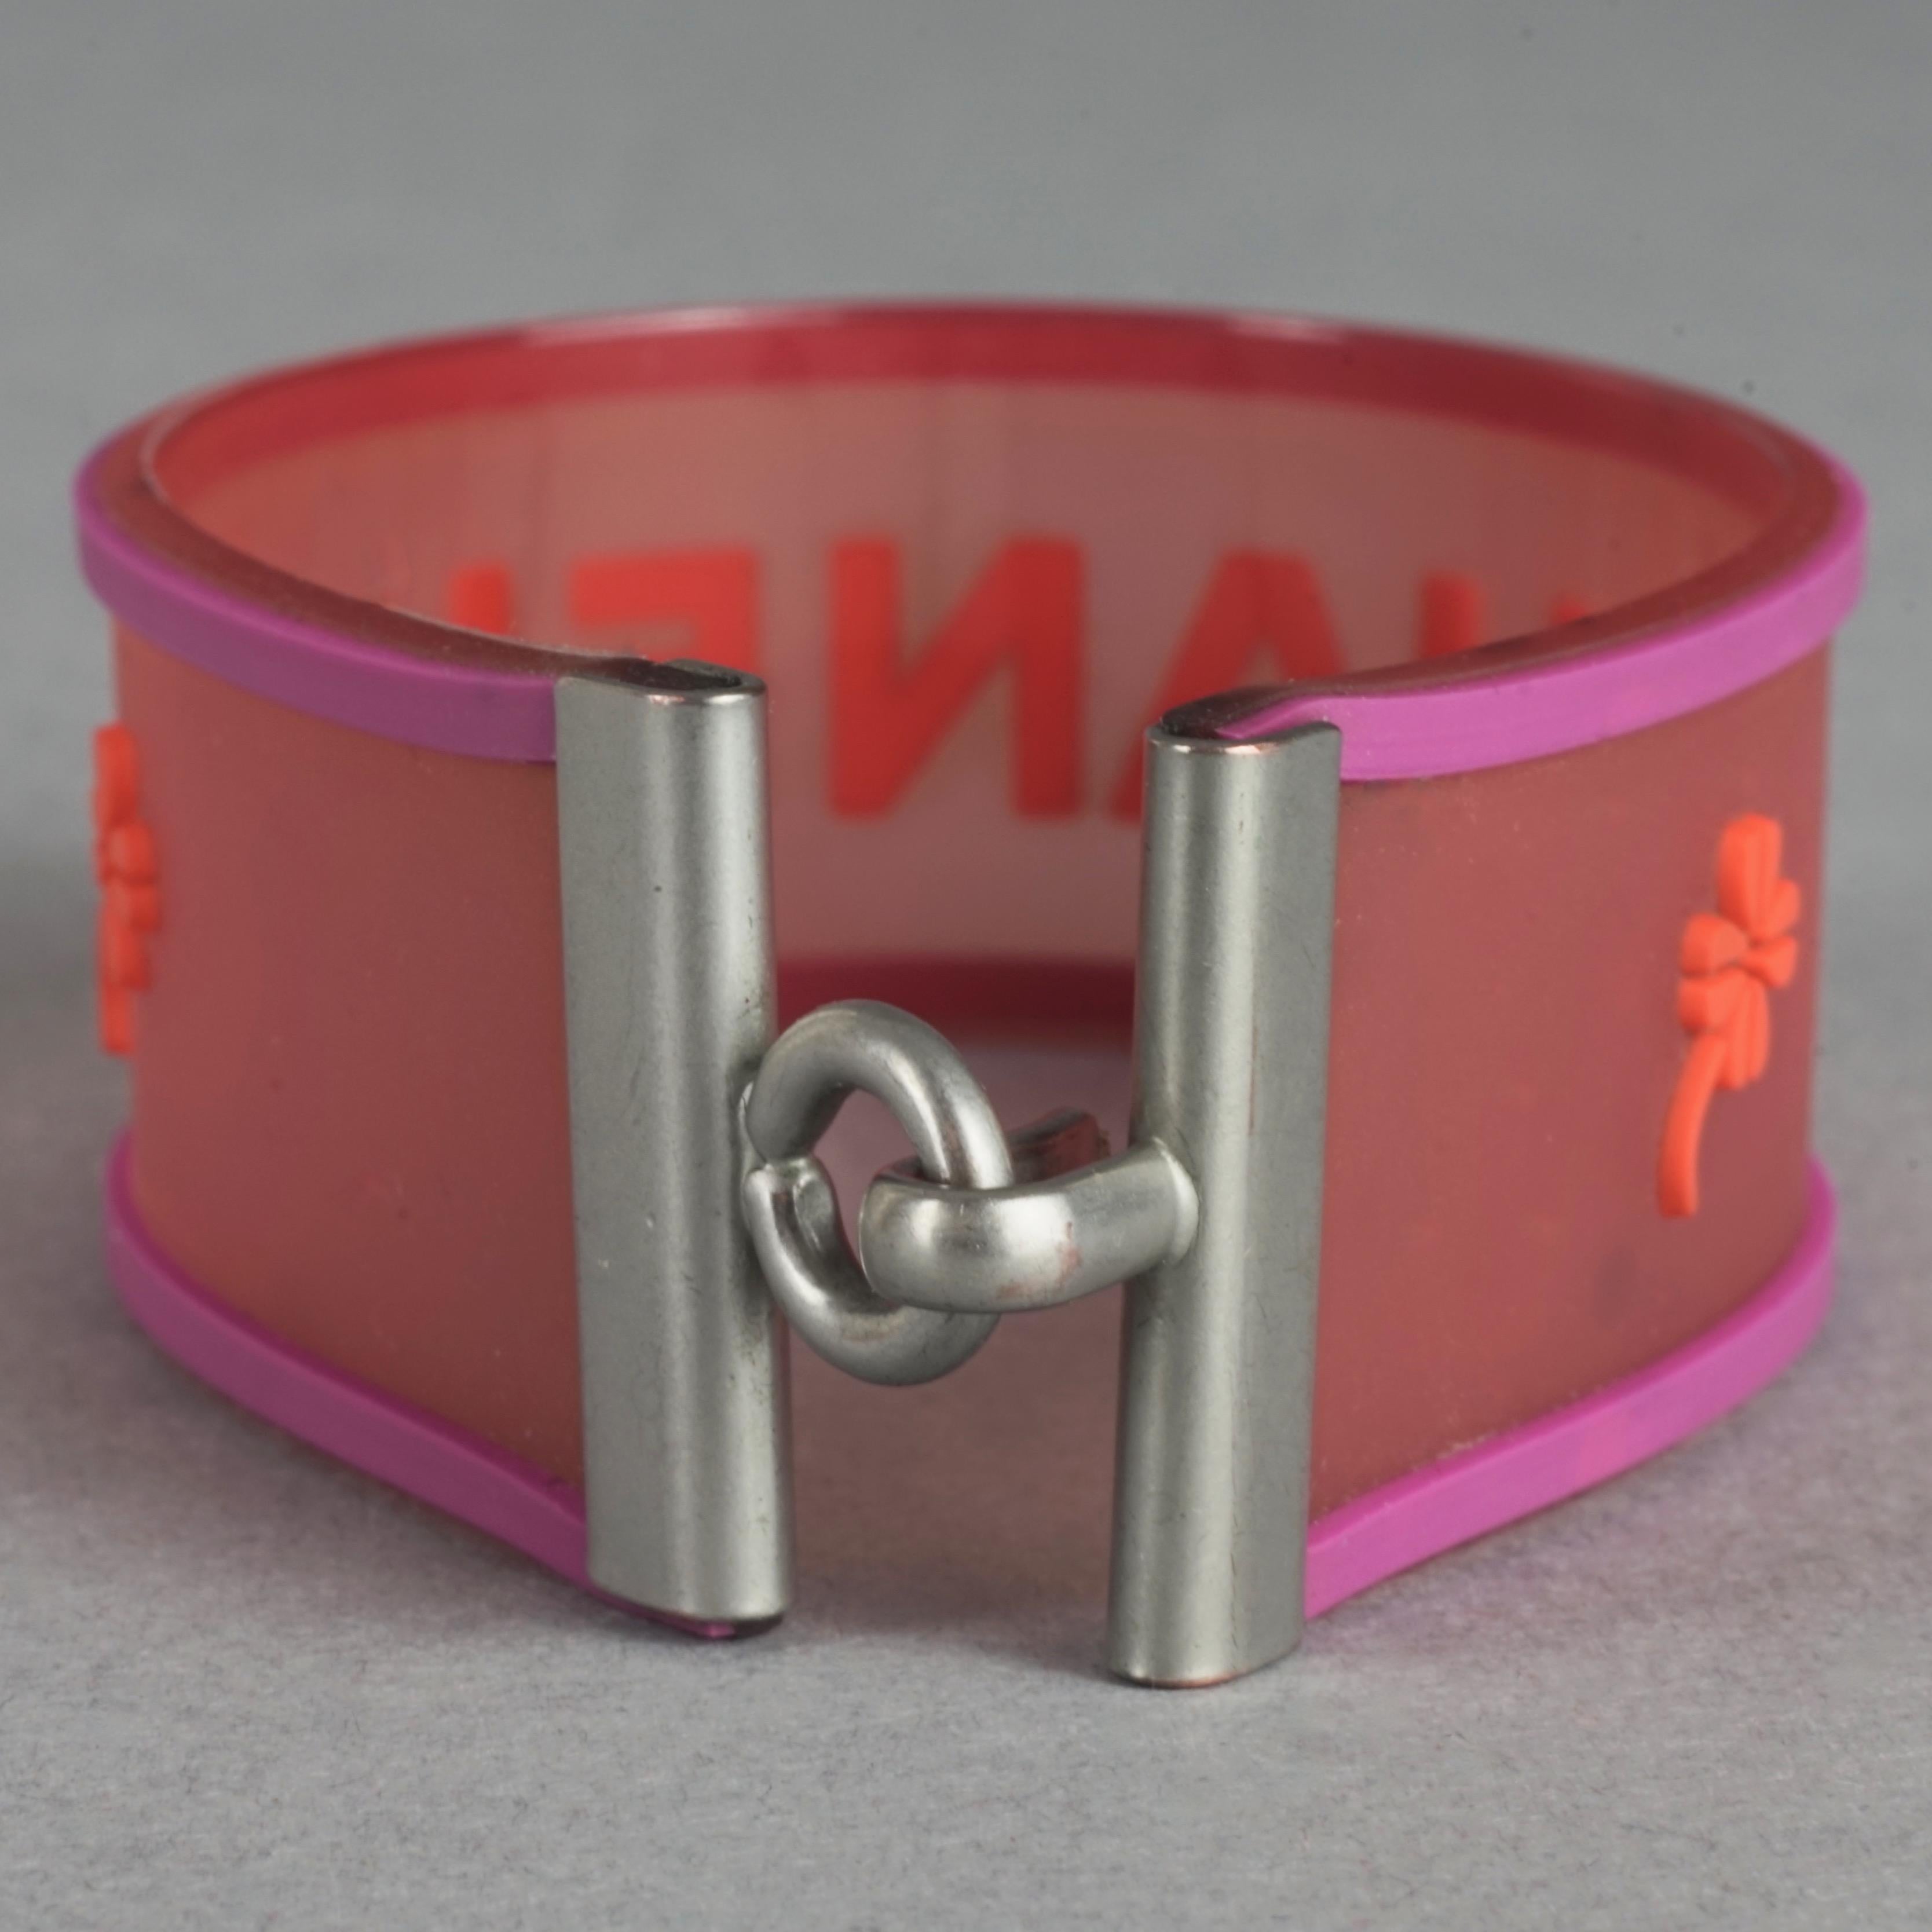 pink rubber band bracelet